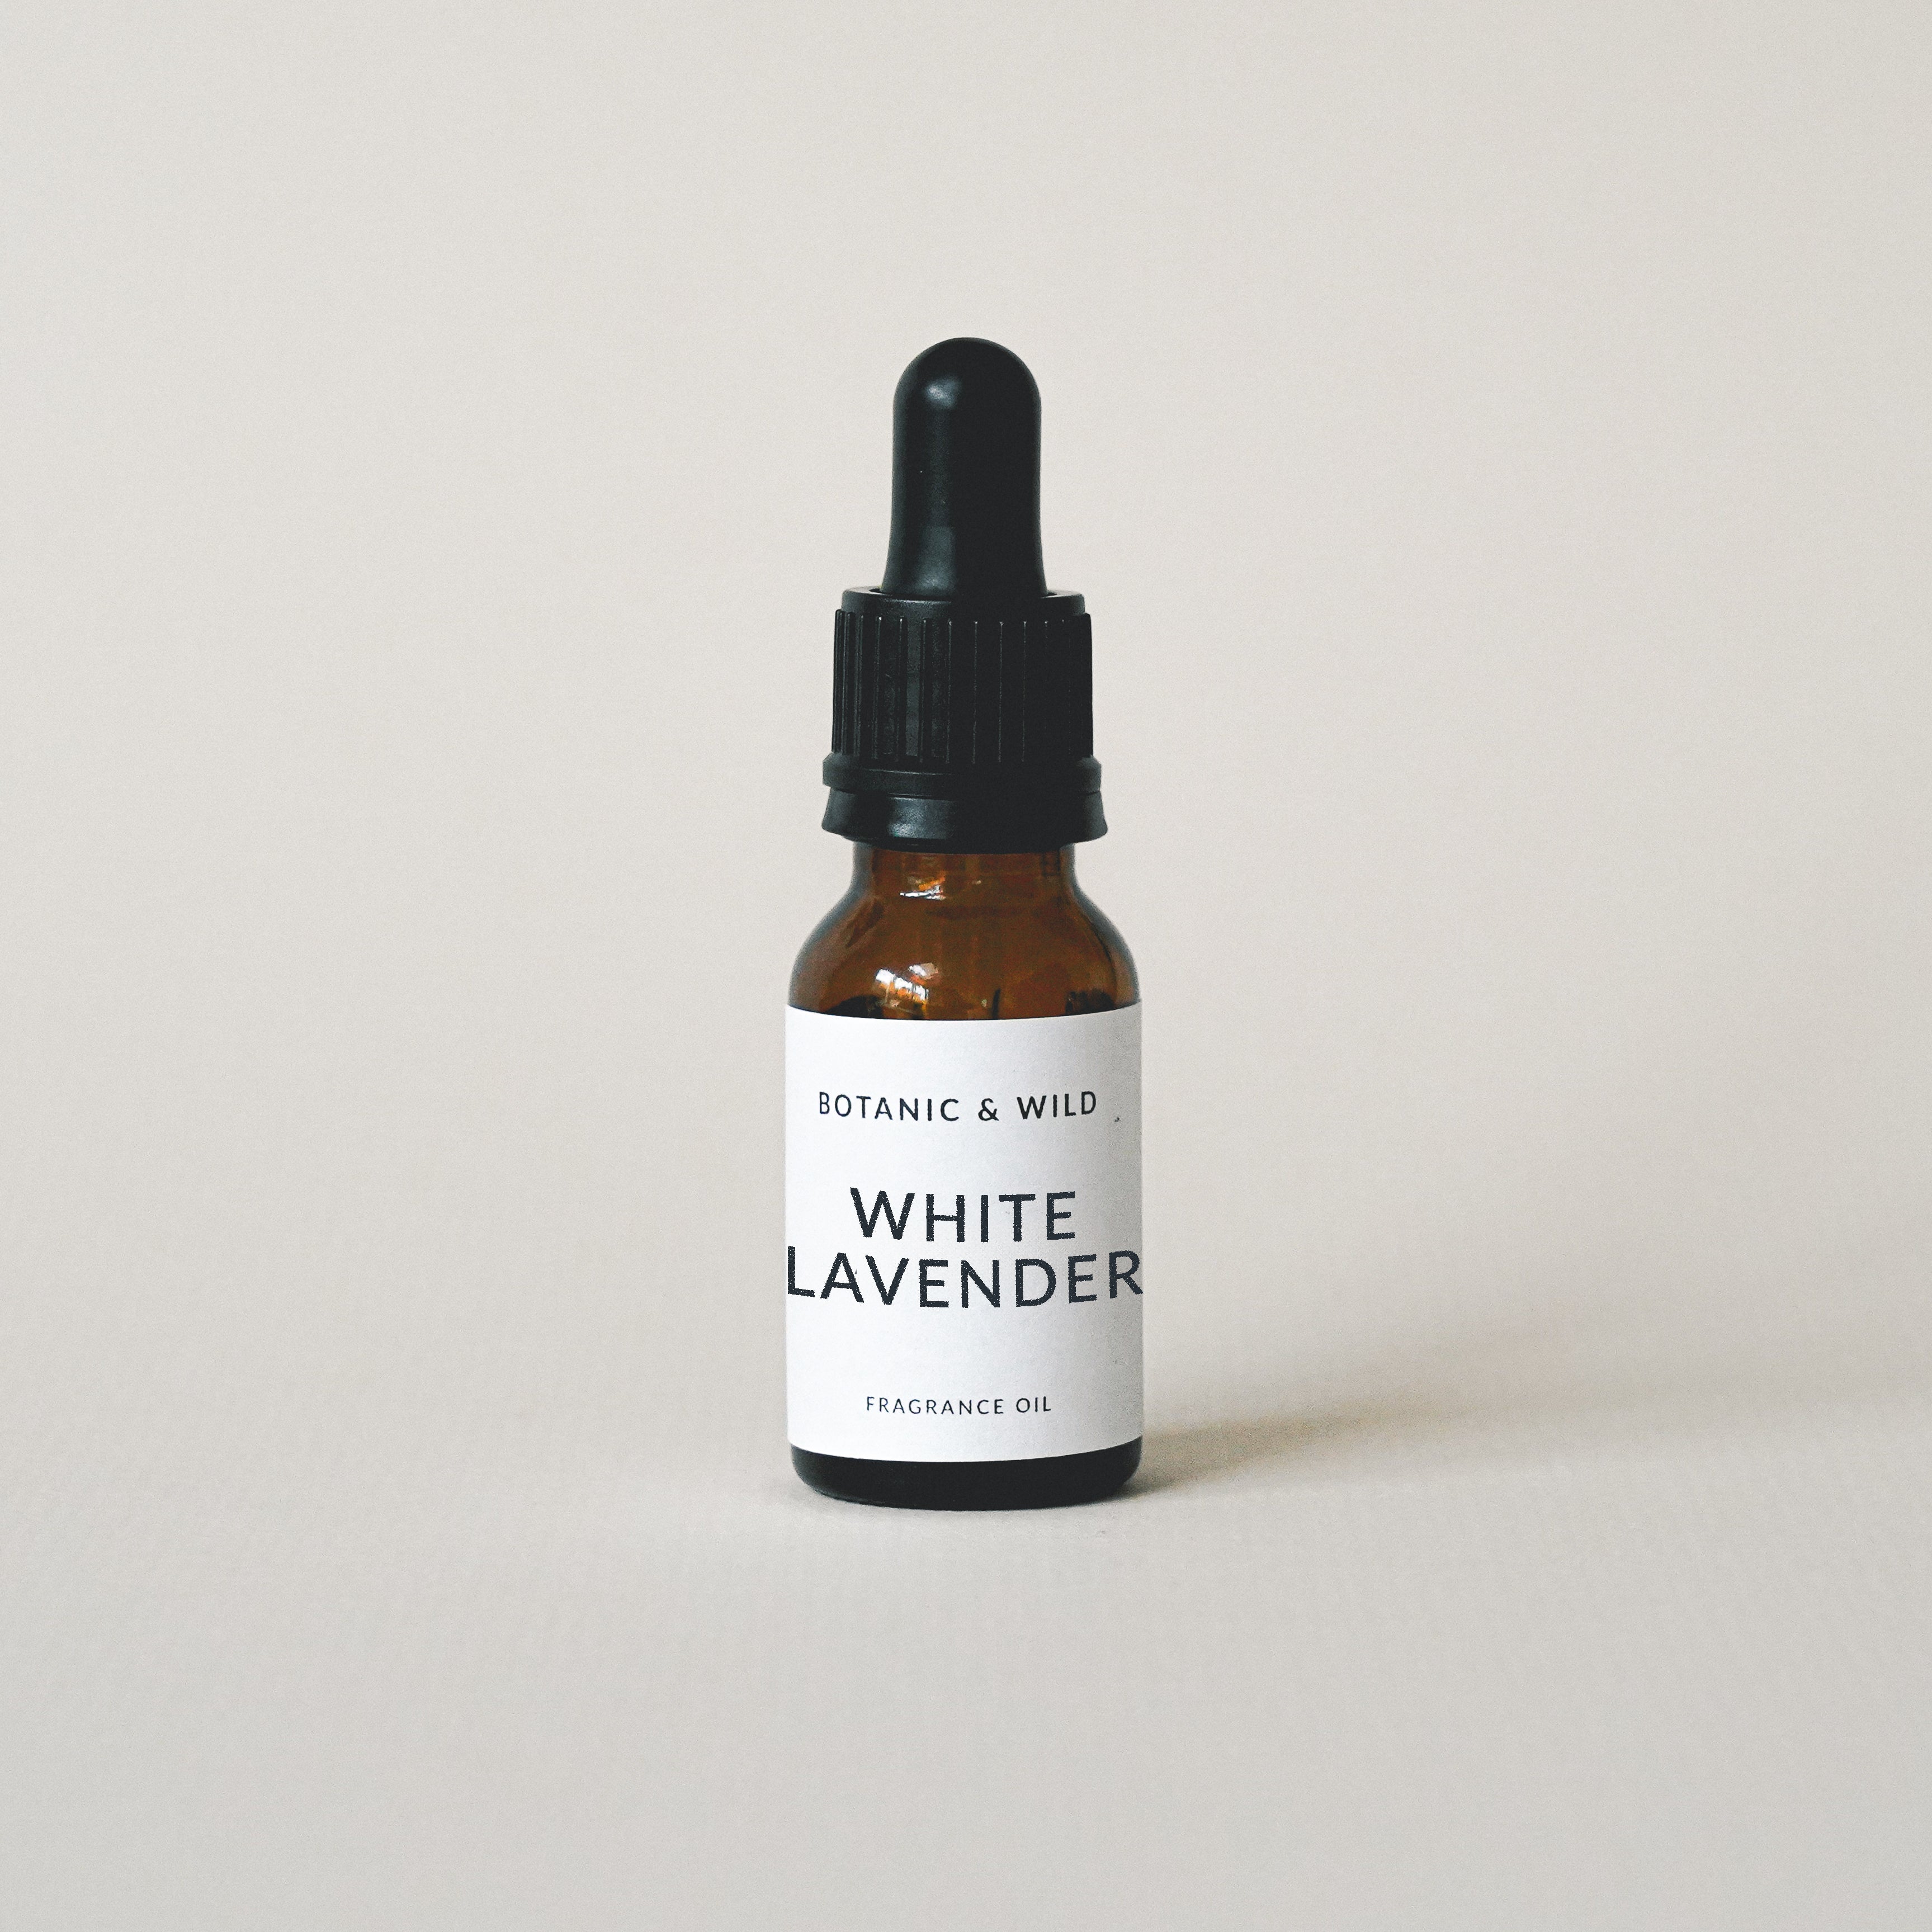 WHITE LAVENDER Fragrance Oil